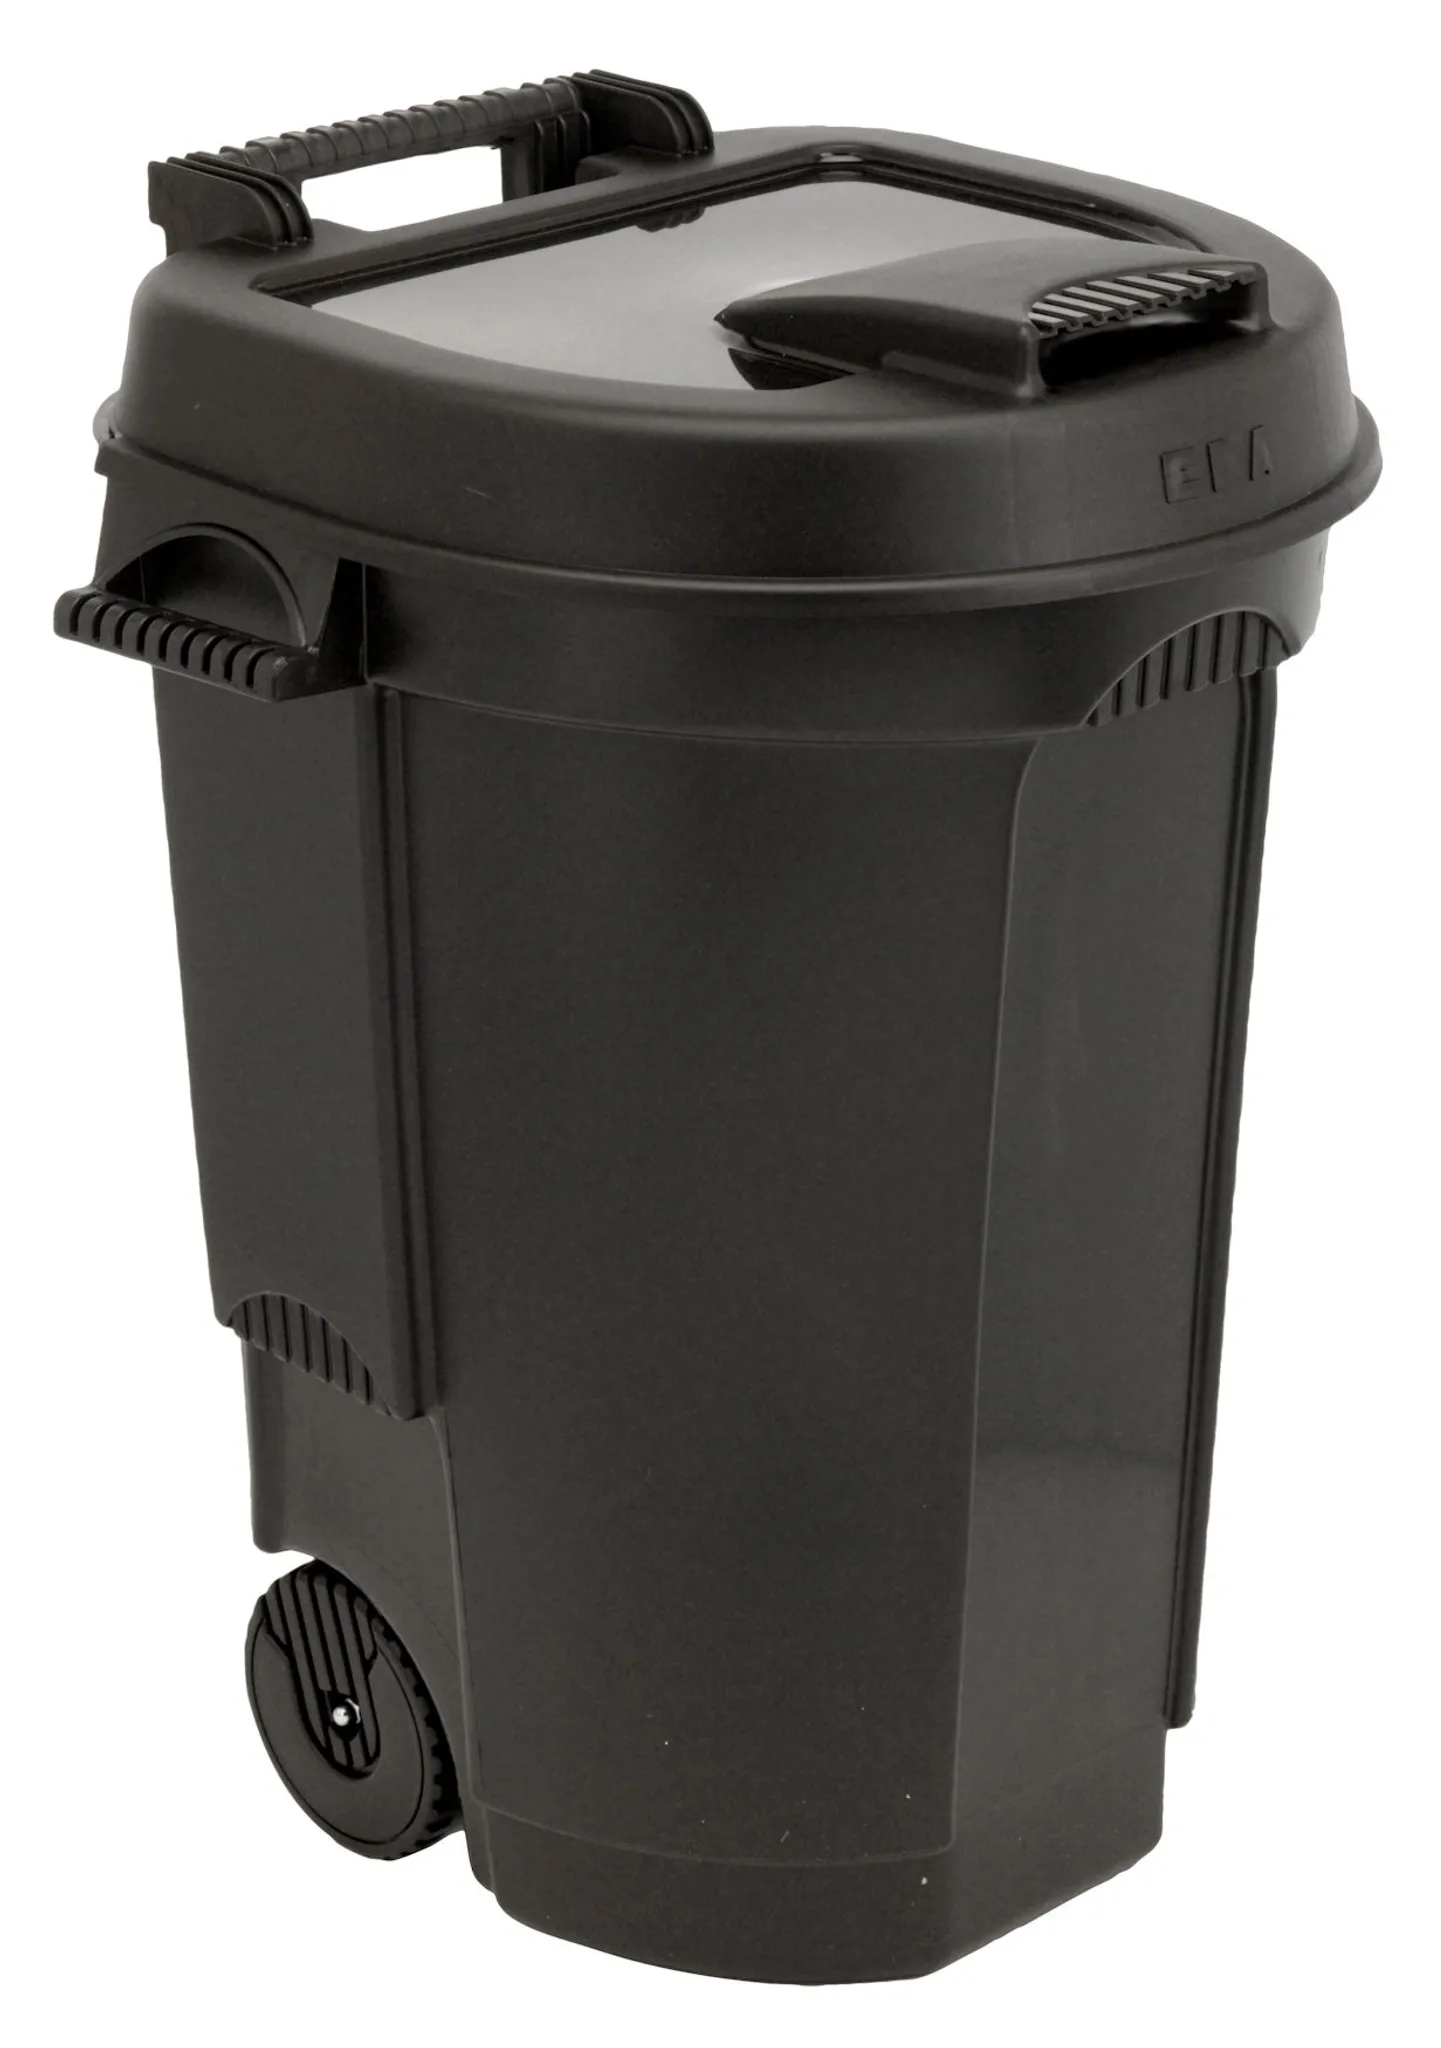 zubehör 2-rad mülltonnen - kunststoff mülltonnen - abfallsammlung -  container, abfall- und auffangbehälter - produkte